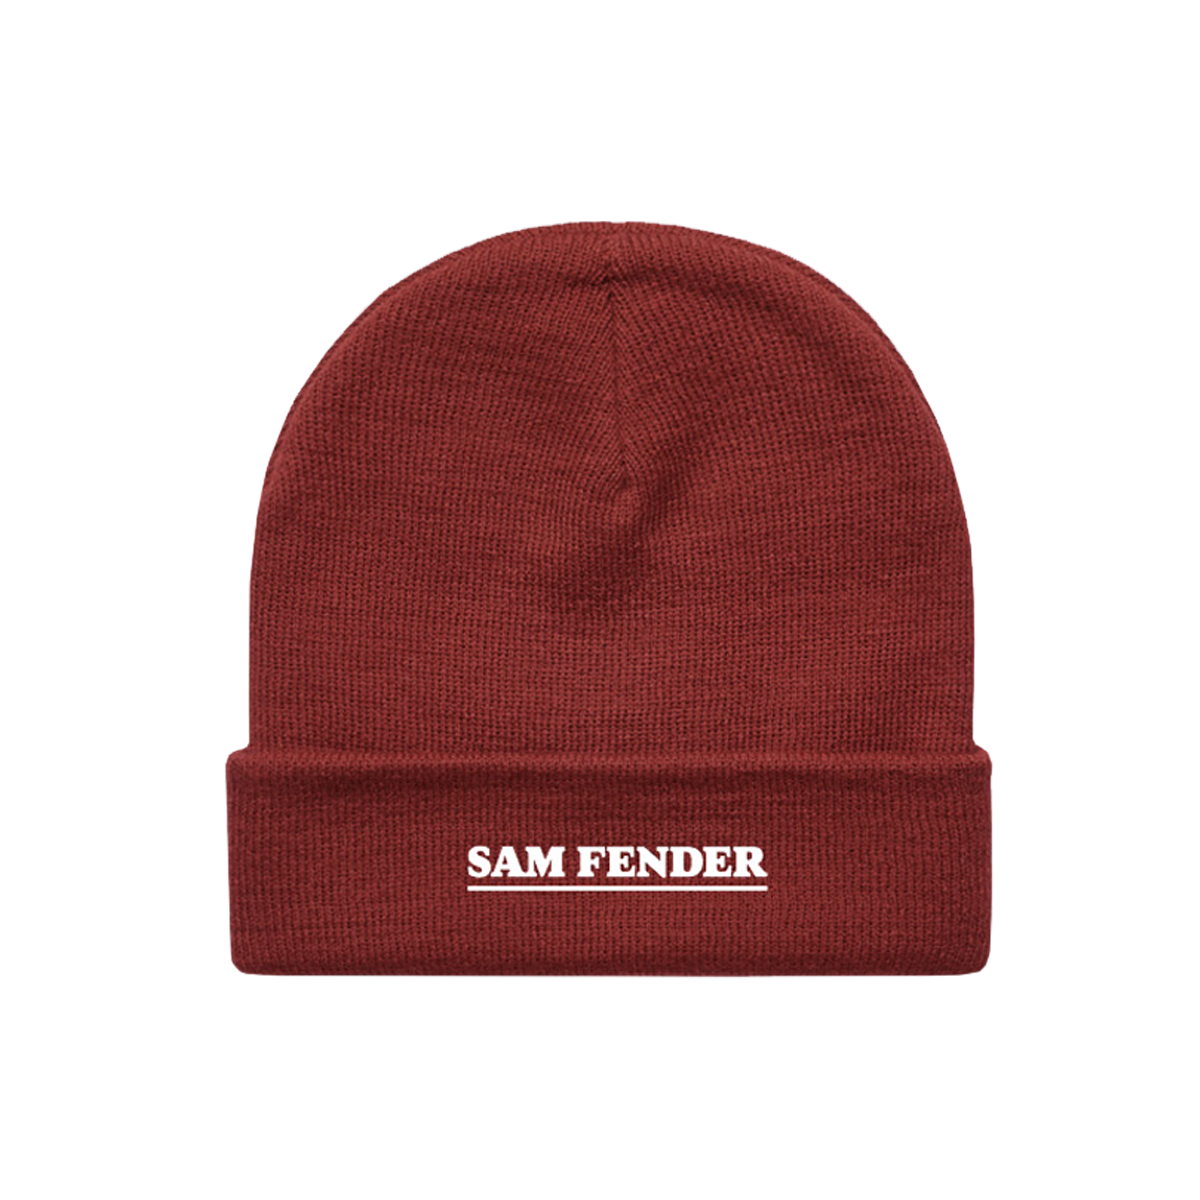 Sam Fender - Sam Fender Red Embroidered Beanie Hat